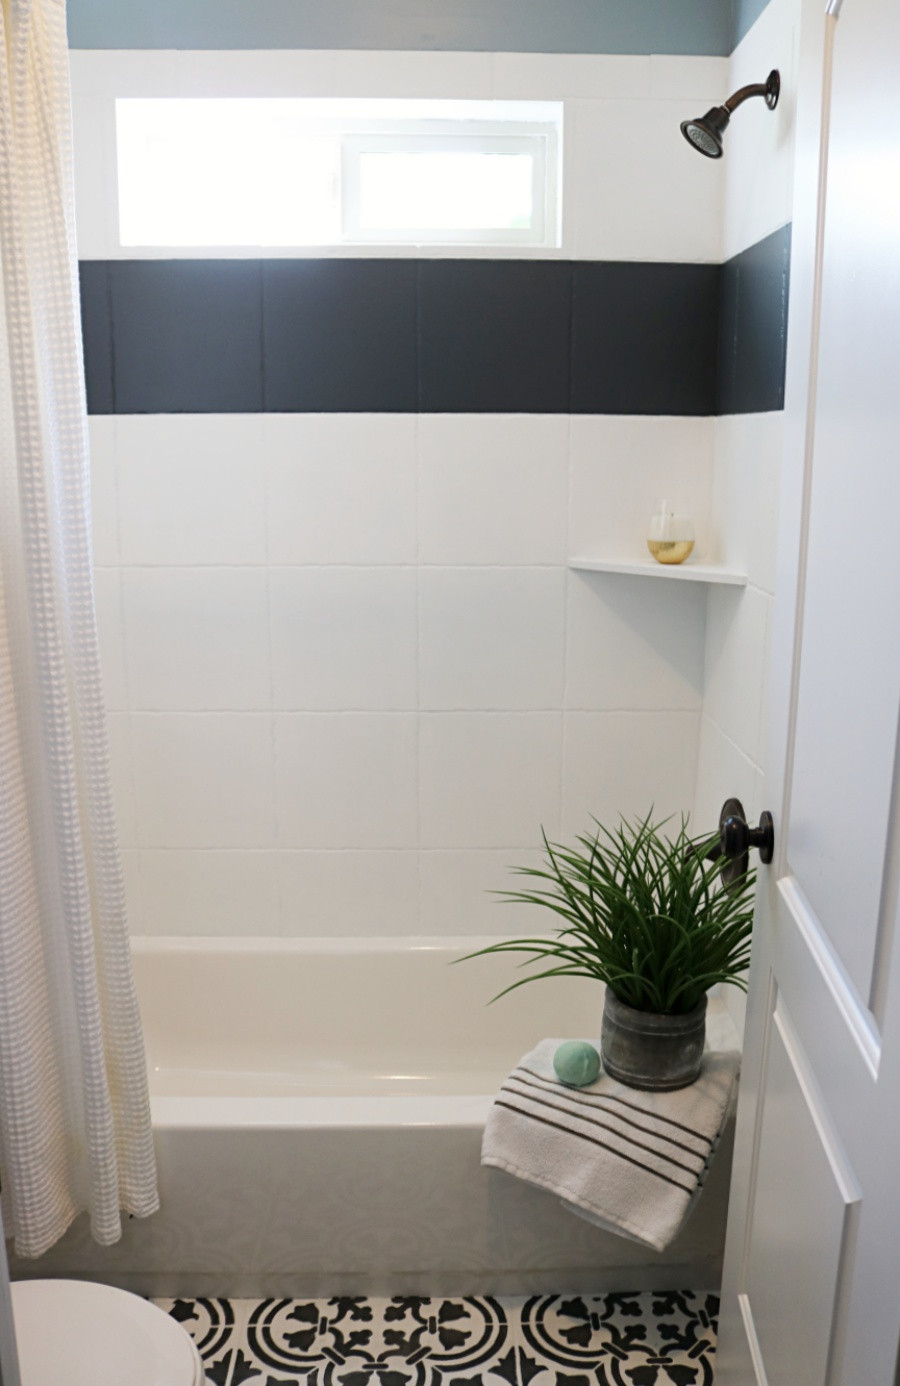 Painting Bathroom Tile
 How to Paint Shower Tile Remington Avenue